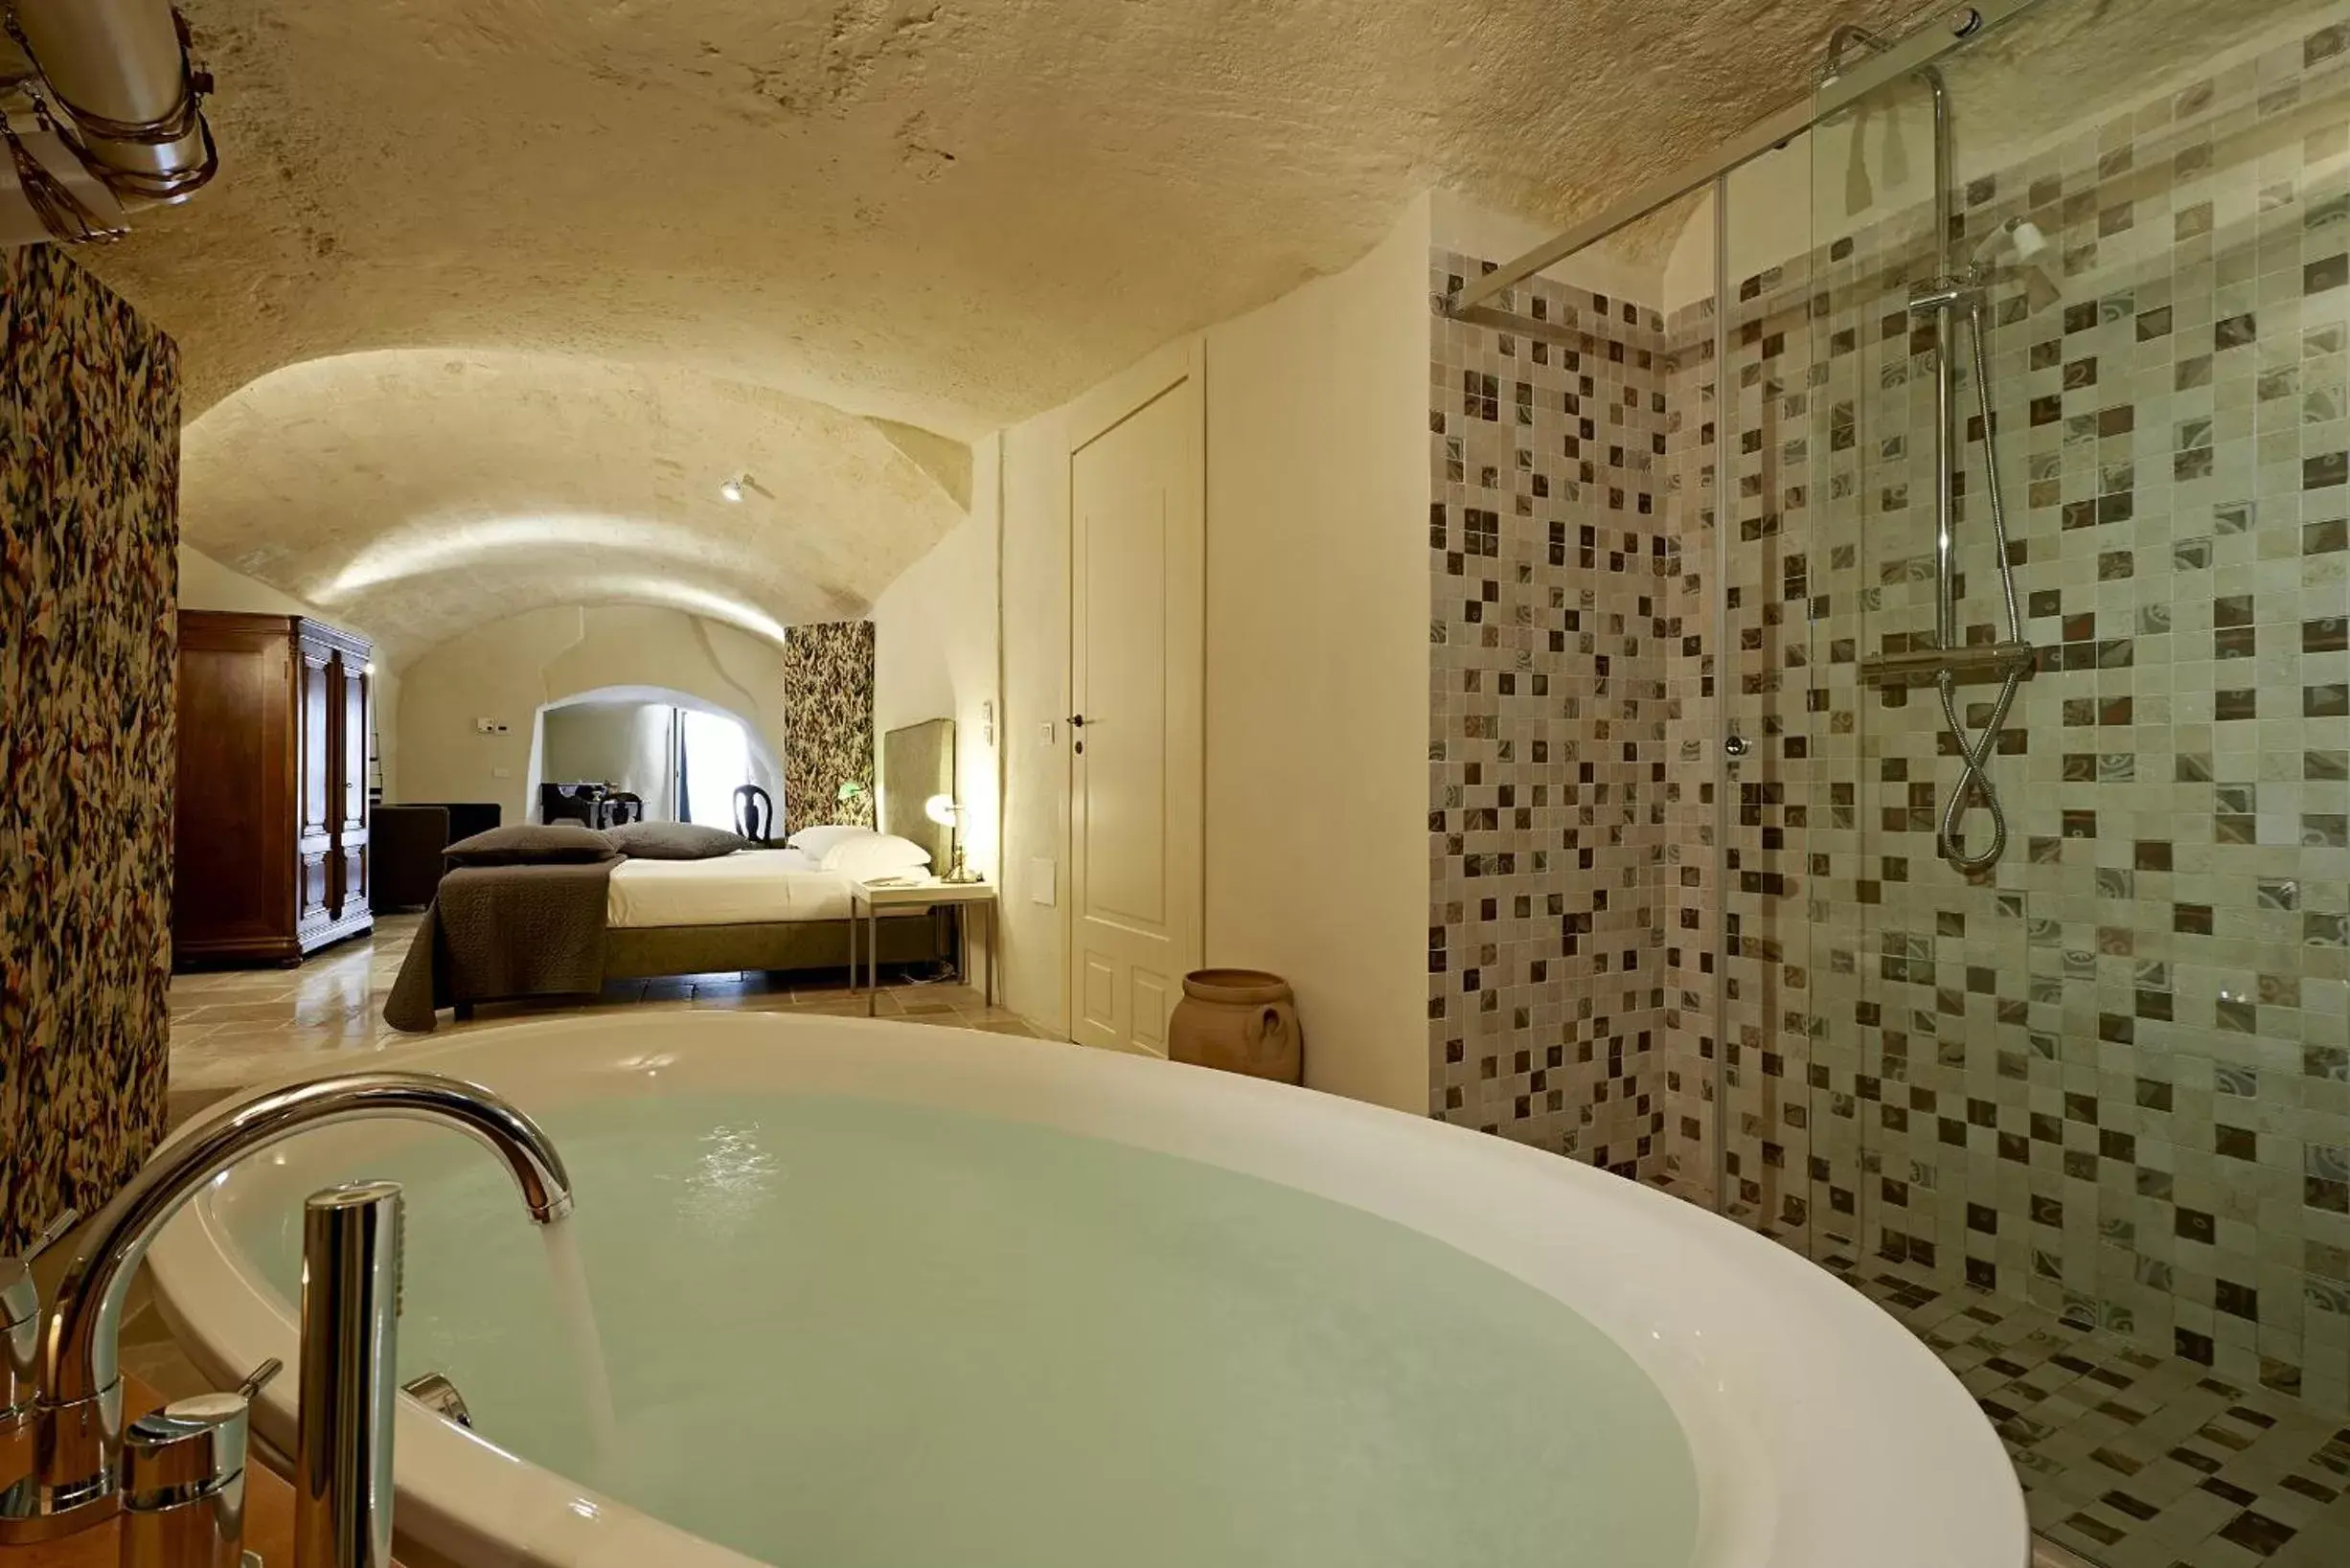 Steam room, Bathroom in Fra I Sassi Residence